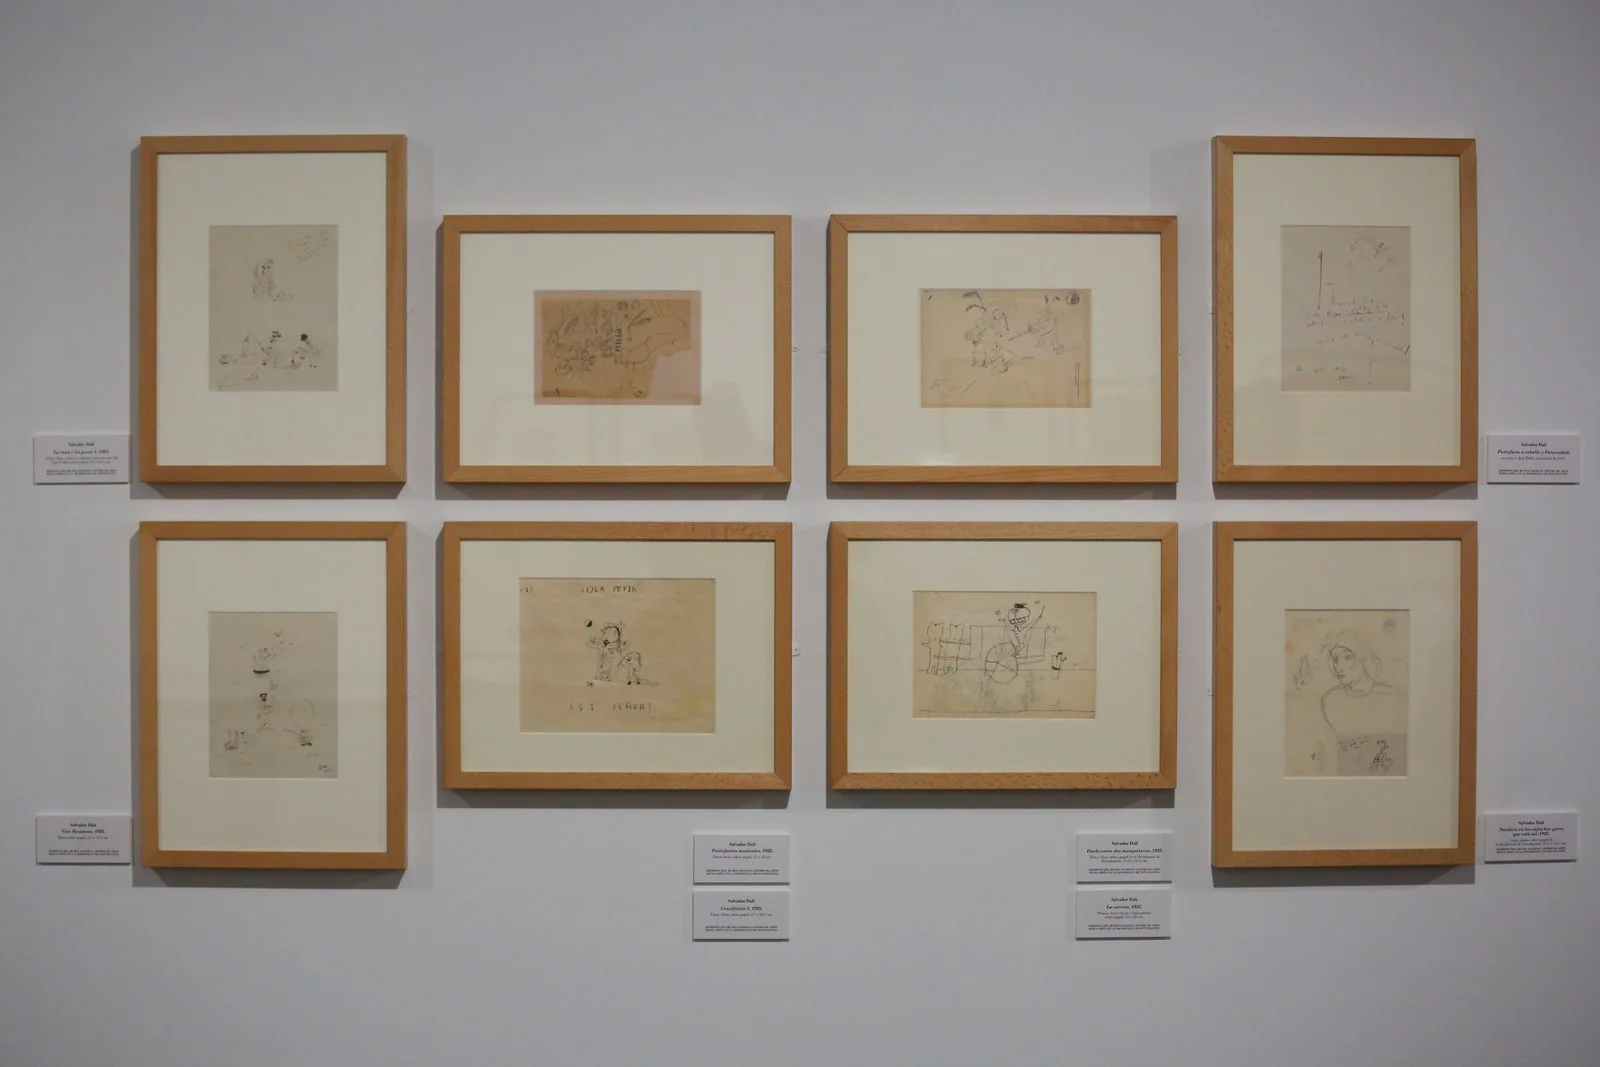 Conjunto completo de los ocho dibujos que componen la famosa serie de 'Los putrefactos' realizada por Salvador Dalí. Depósito del museo Reina Sofía en la Residencia de Estudiantes.